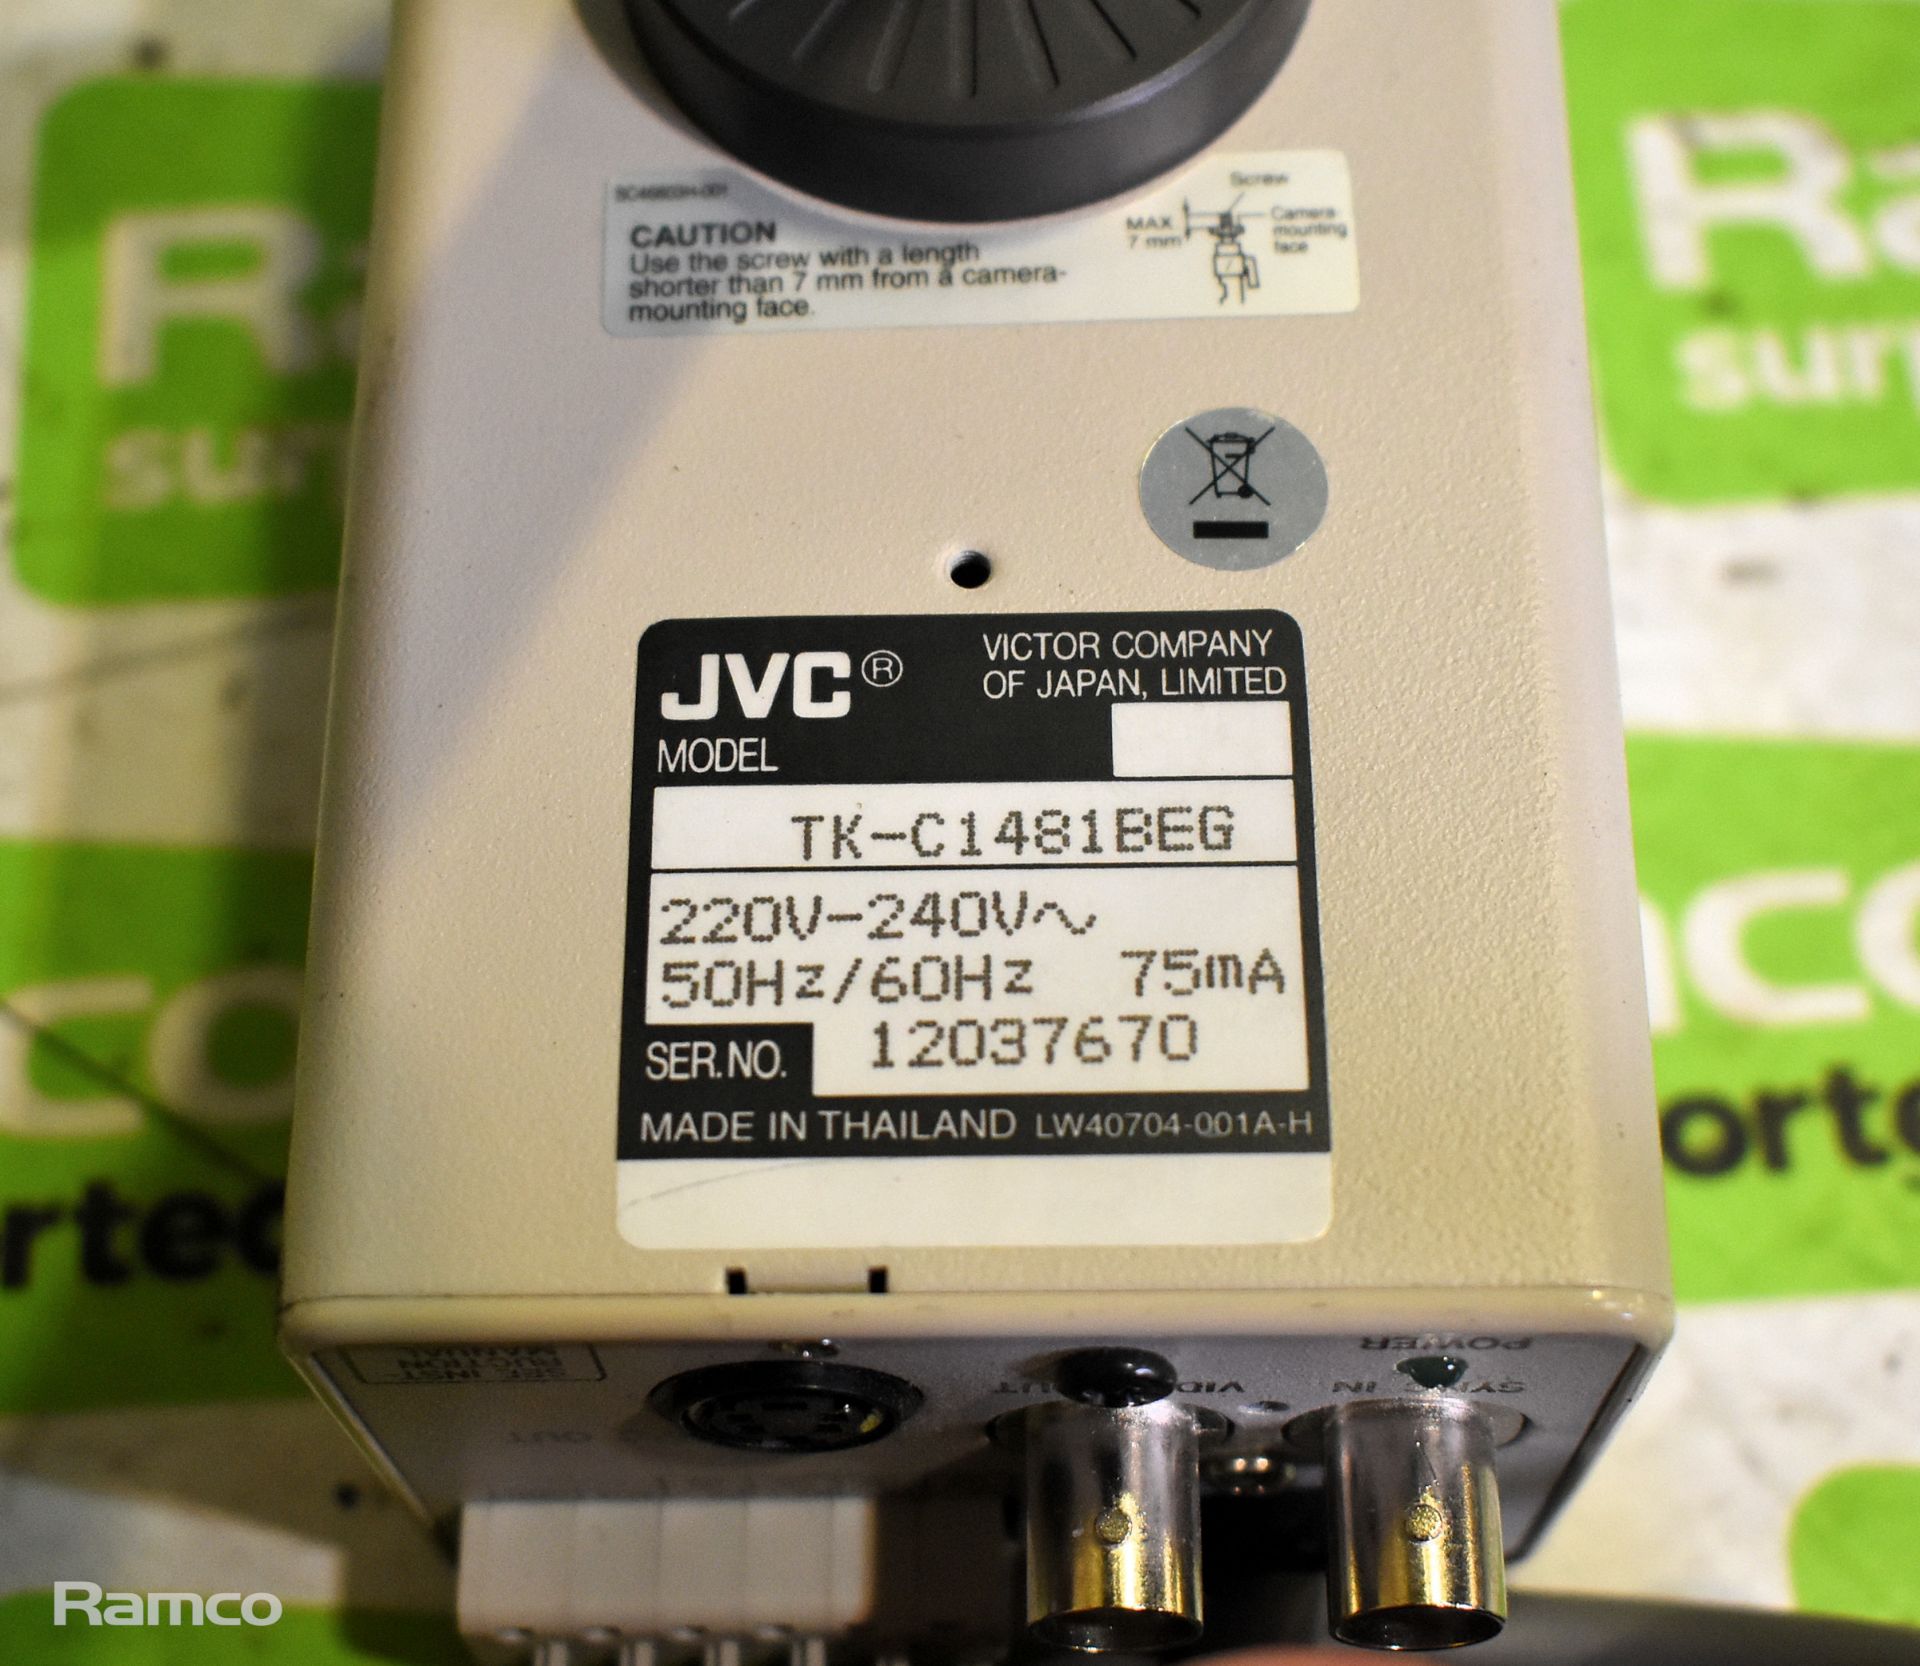 5x JVC TK-C1481BEG Digital color video cameras - Image 3 of 5